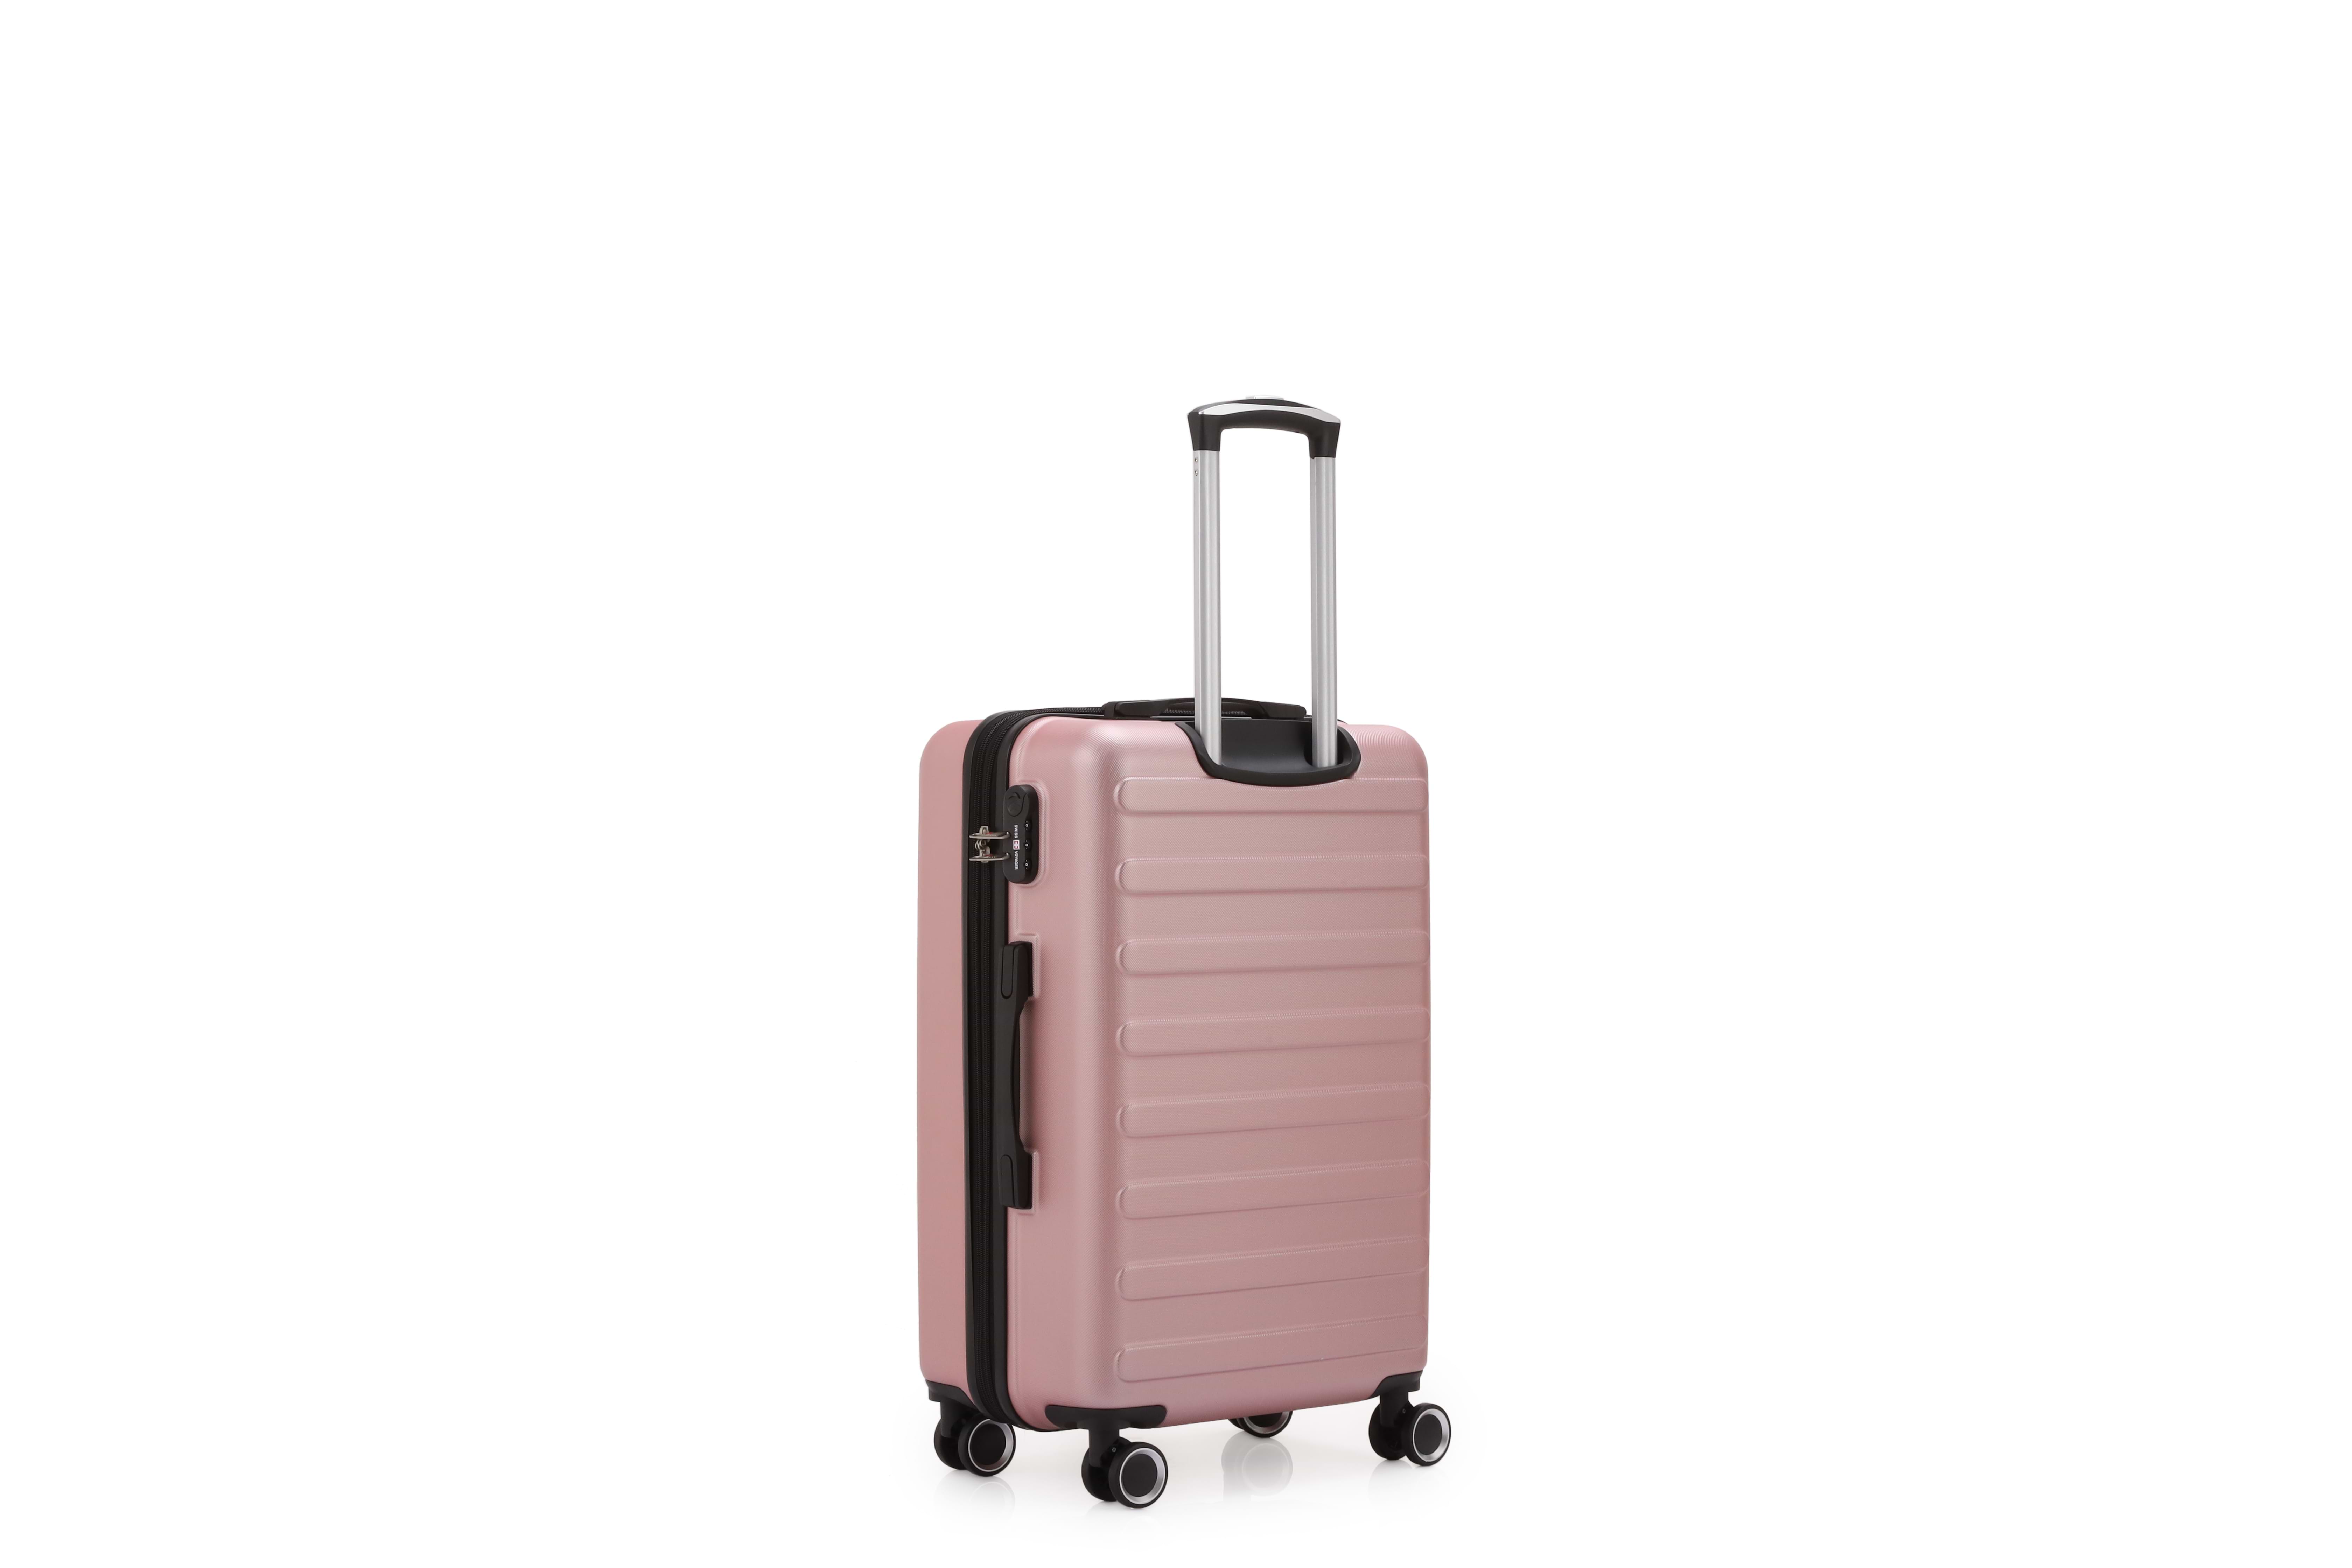 סט מזוודות קשיחות 3 יחידות מידות 28|24|20 אינץ' דגם Vegas צבע רוז גולד Swiss Voyager - תיק איפור במתנה